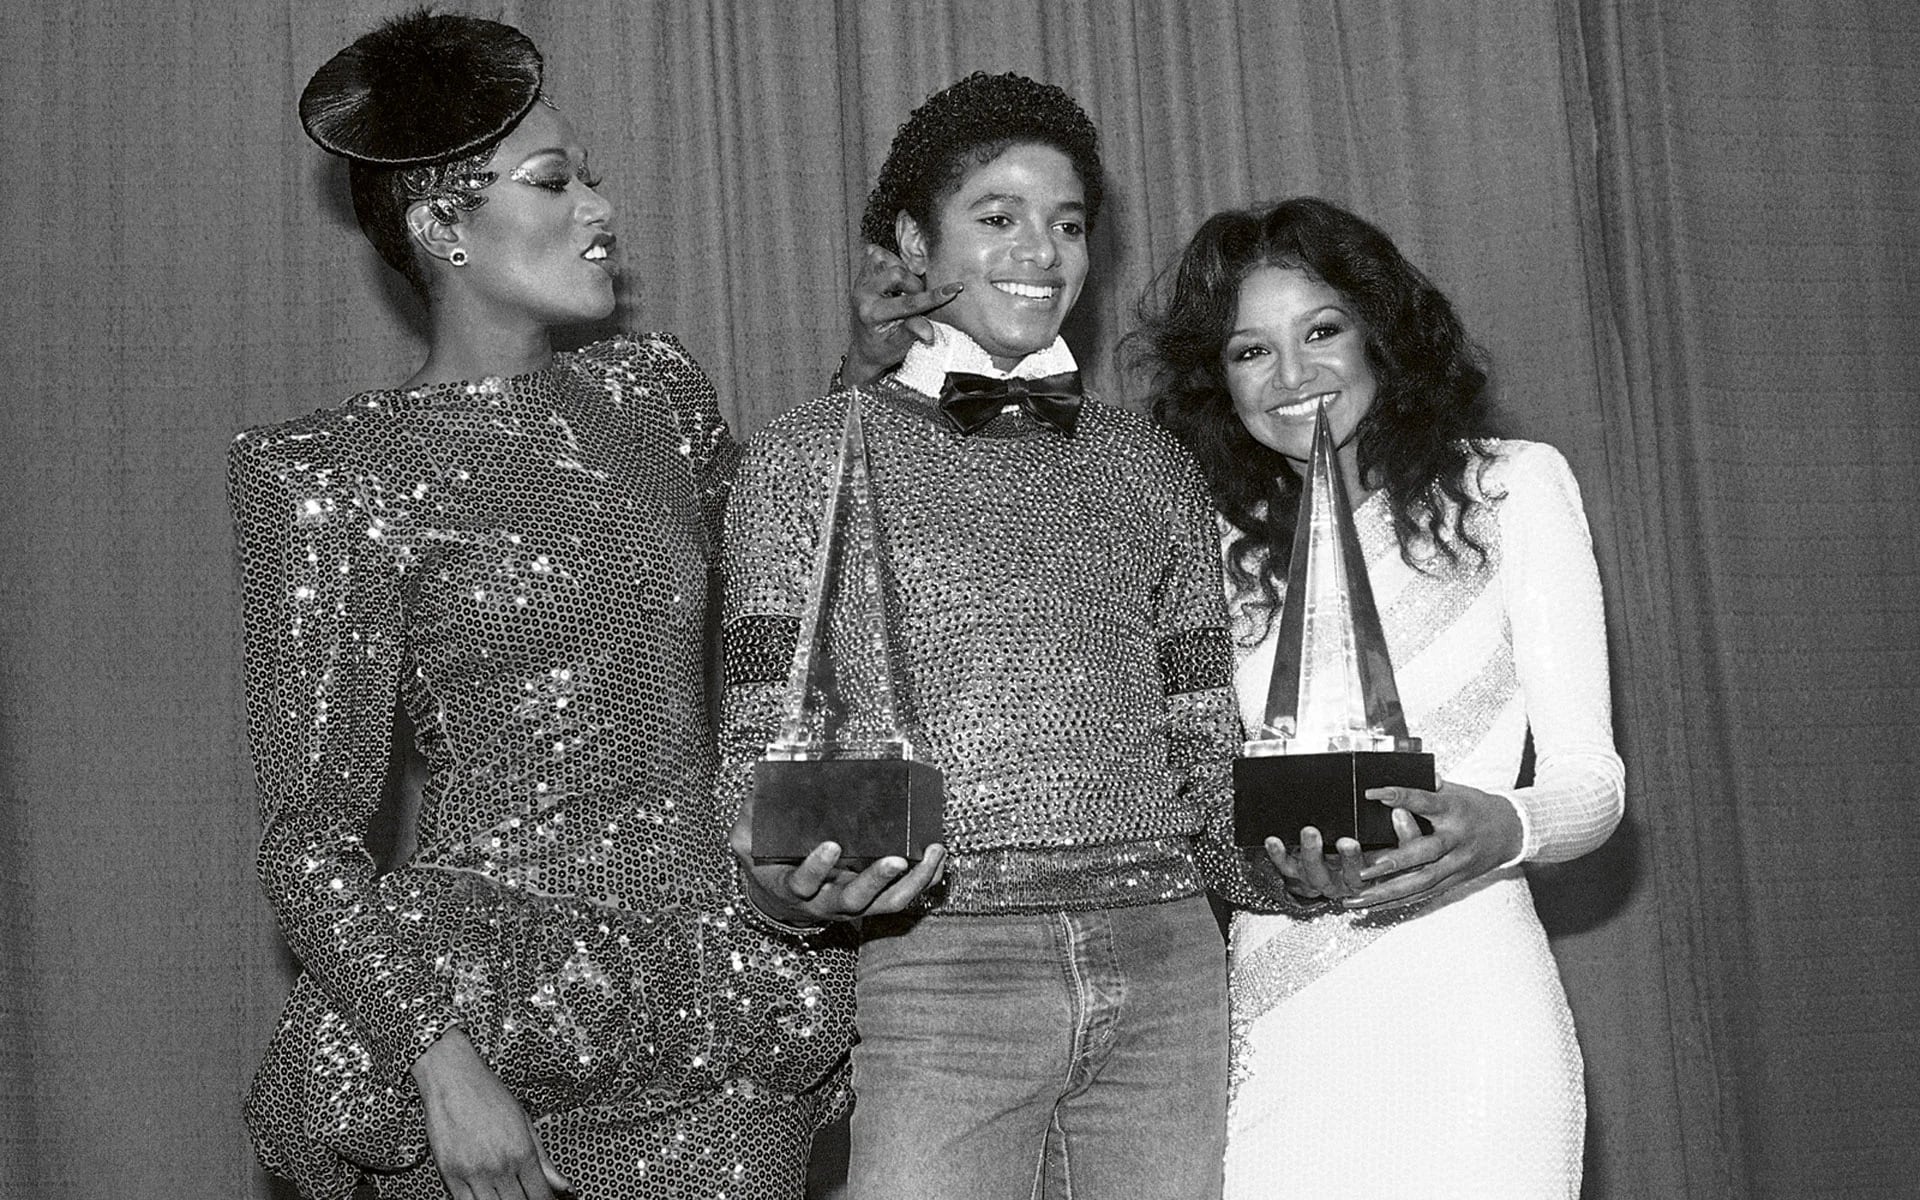 Bonnie Pointer acaricia la mejilla de Michael Jackson, al otro lado, Latoya, hermana del cantante en los American Music Awards en Los Angeles (Junio de 1981)